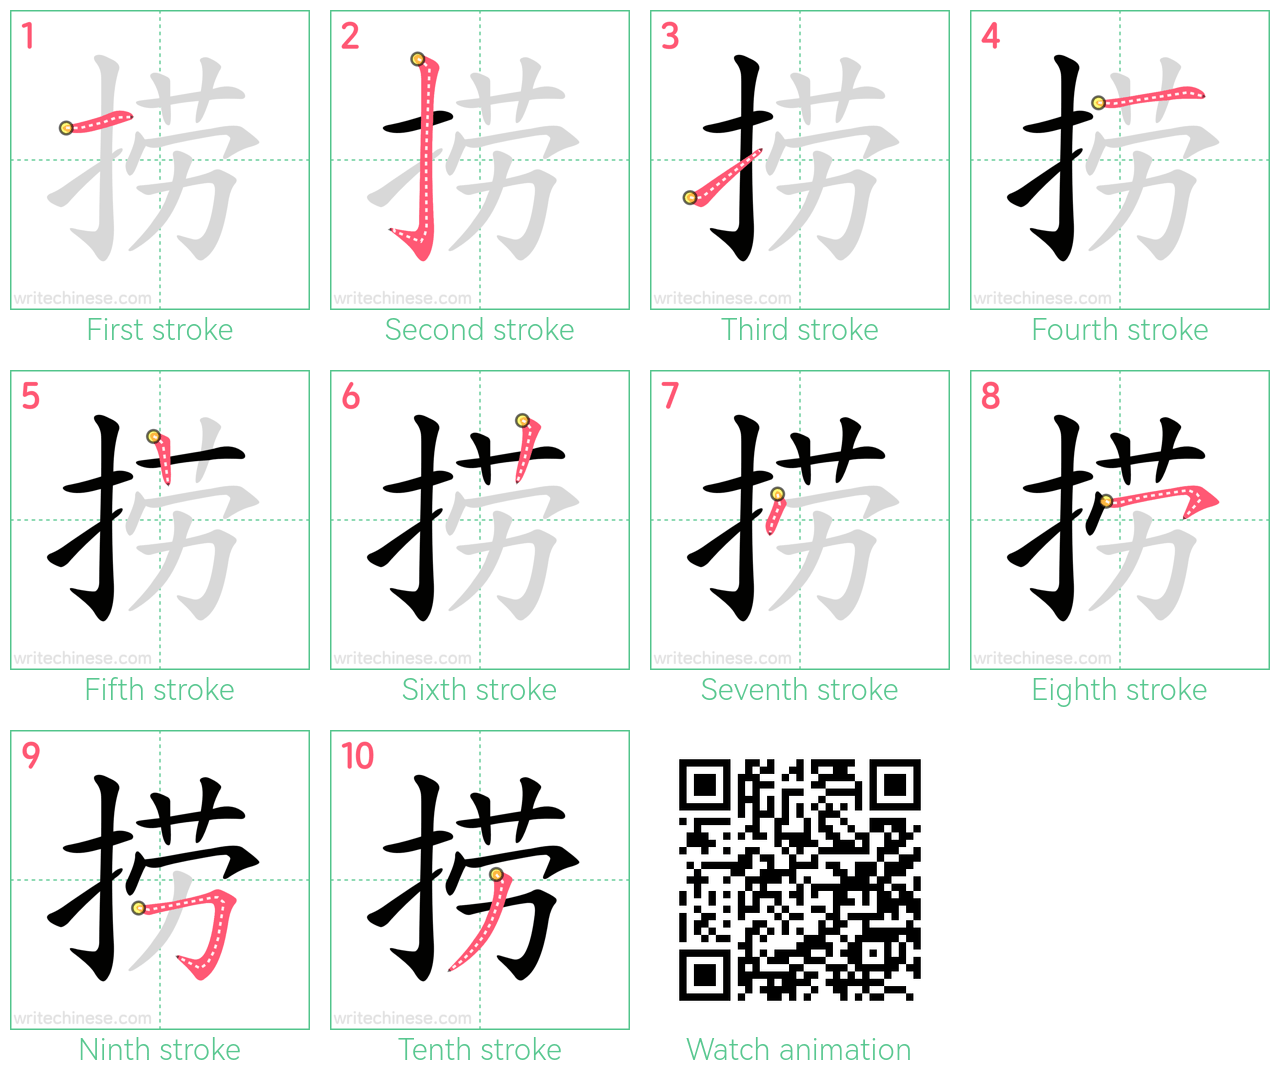 捞 step-by-step stroke order diagrams